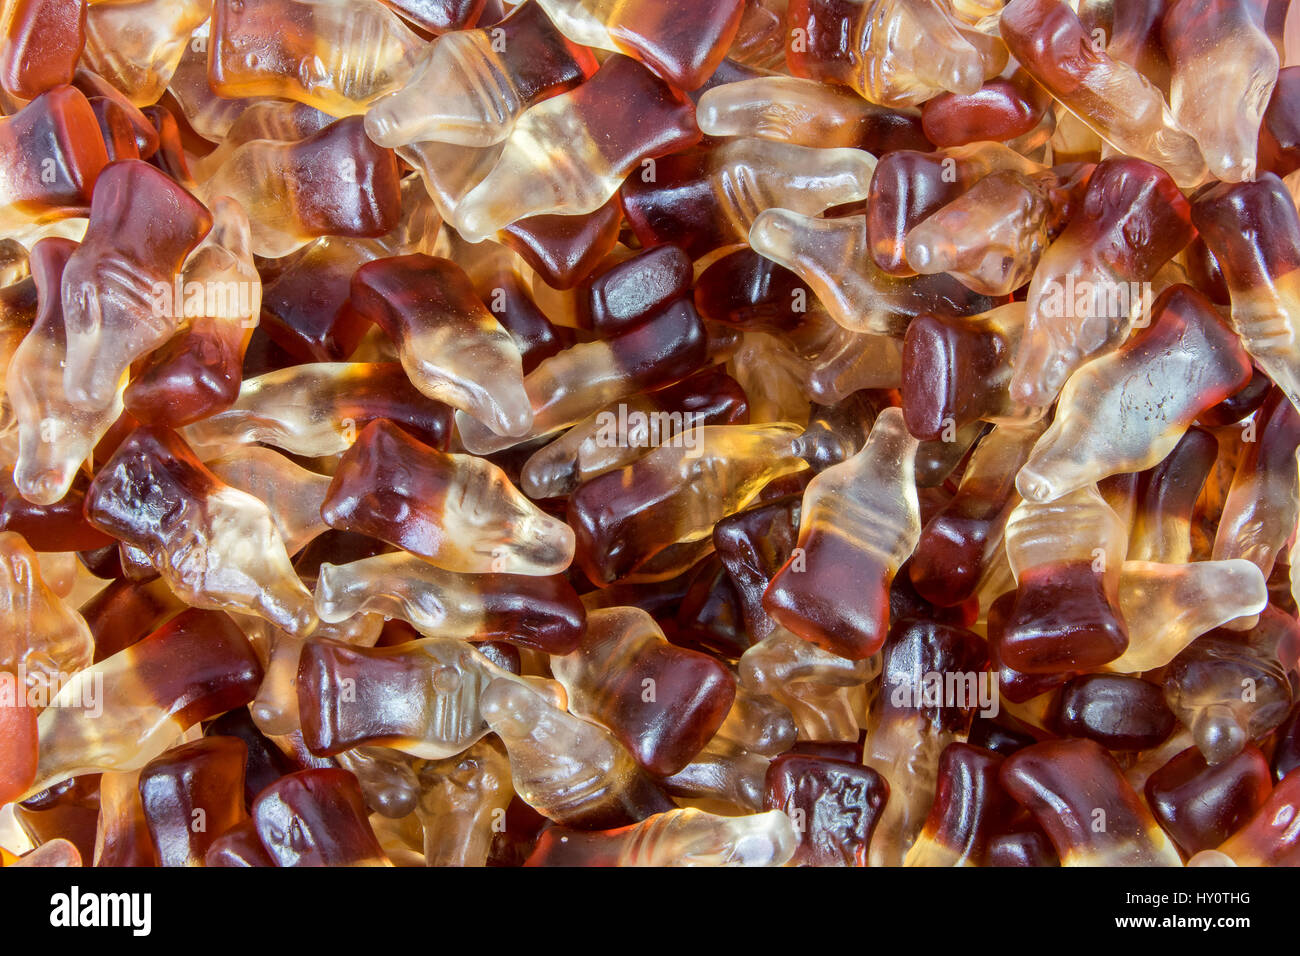 Nahaufnahme der Cola Flasche Gummibärchen Bonbons Stockfotografie - Alamy